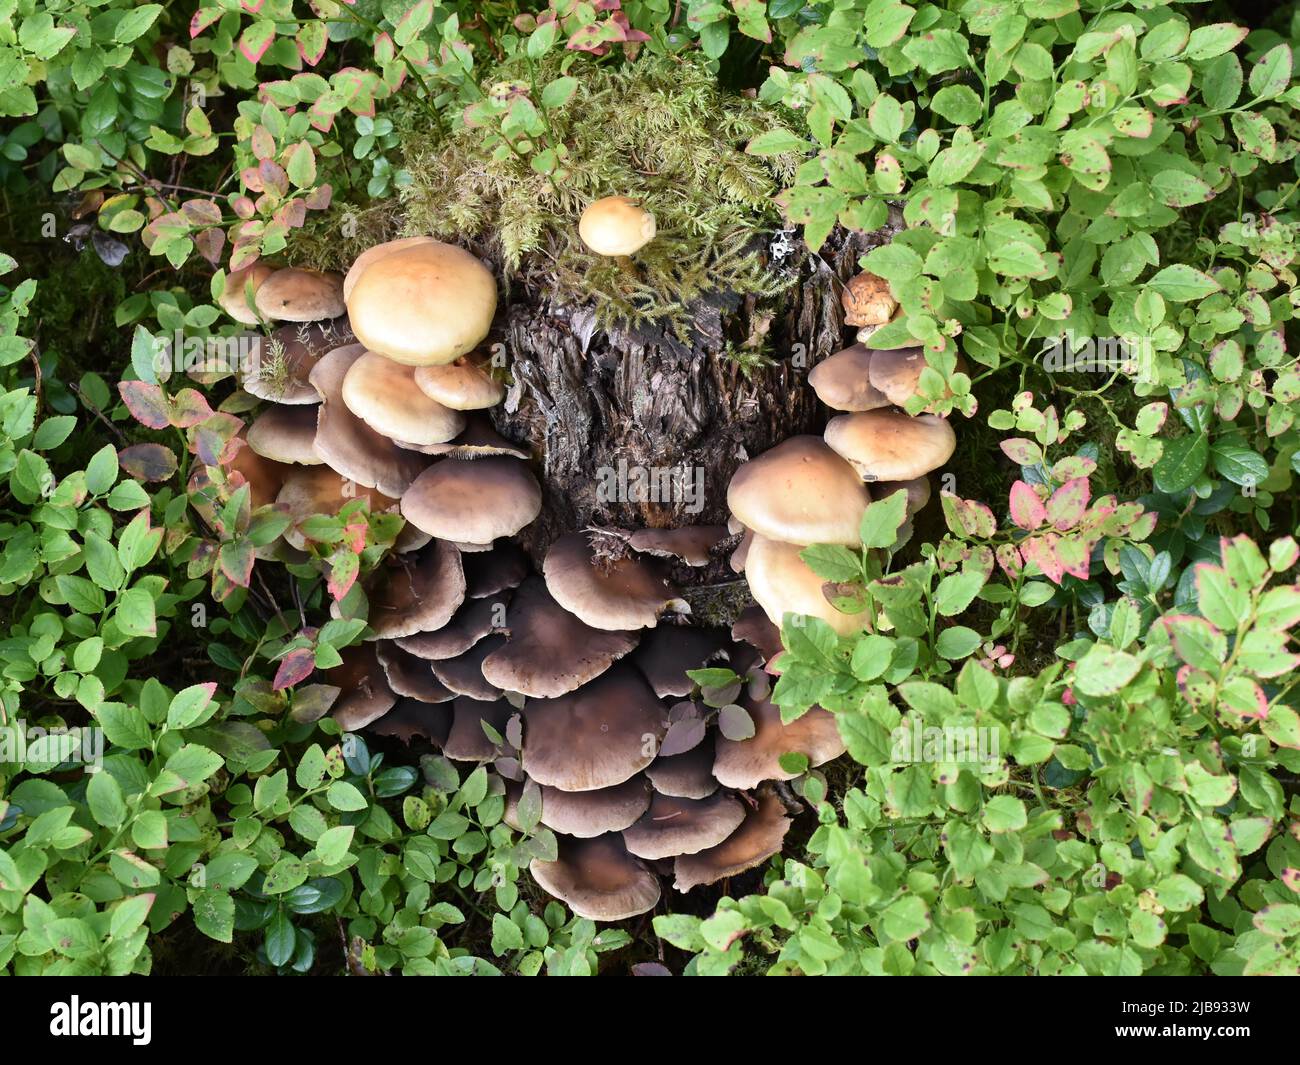 Honey mushroom Armillaria mellea growing on a tree stump Stock Photo